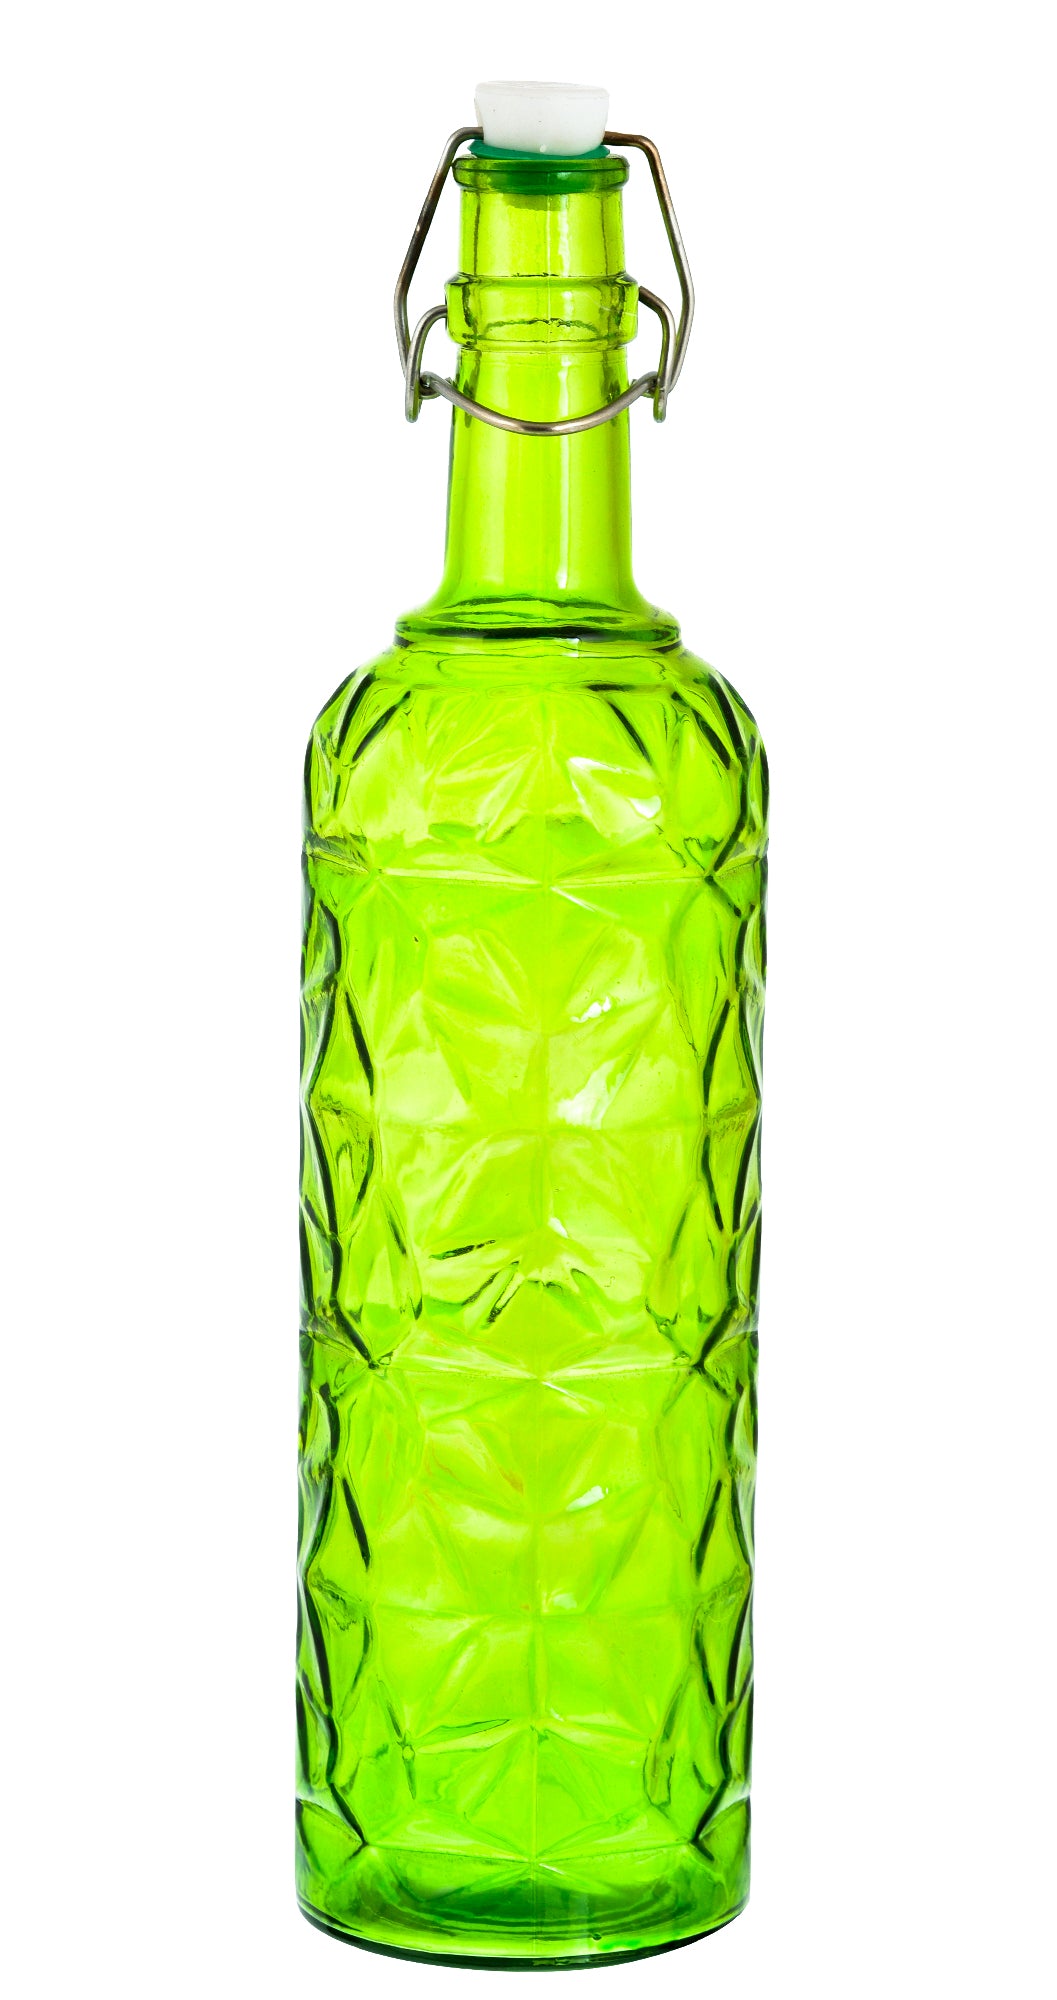 MACHAK Flower Crysta Glass Water Bottle For Kitchen, Home Decoration